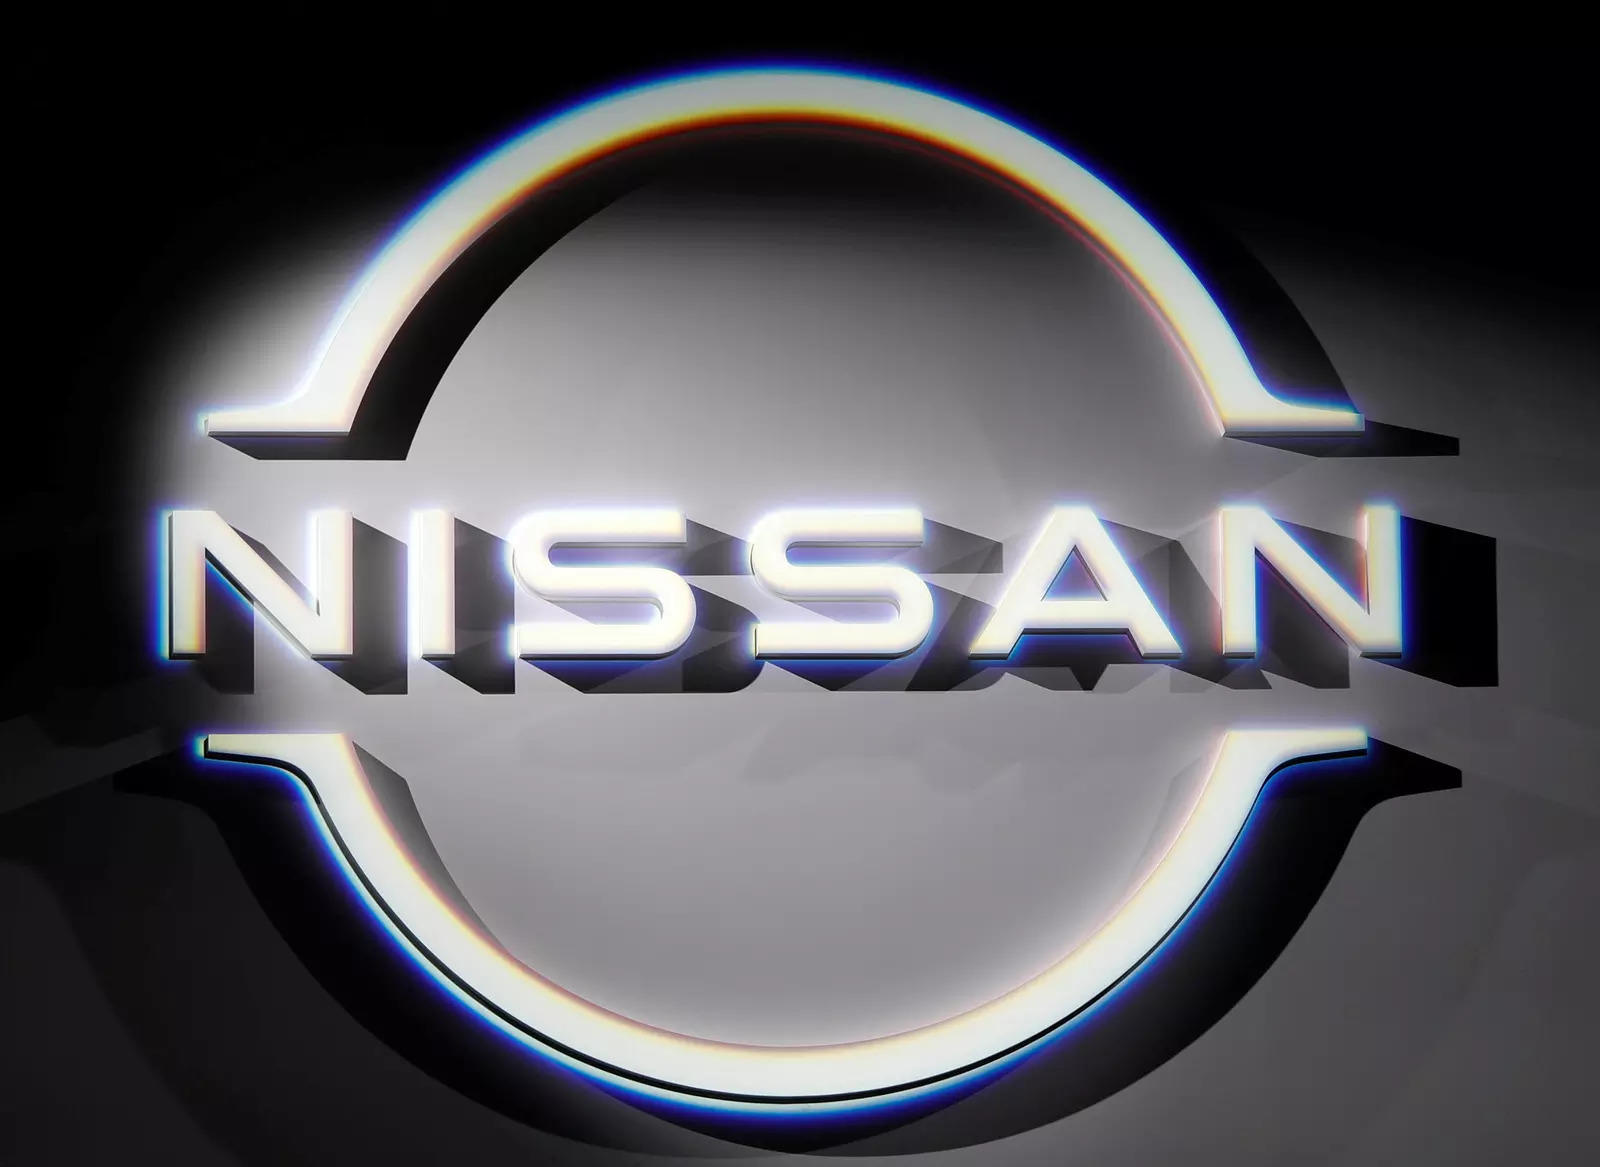 일본에서 두 번째와 세 번째로 큰 자동차 제조업체 인 Honda와 Nissan은 이번 달에 합산하여 올해 회계 연도에 25 만 대를 더 적게 판매 할 것이라고 밝혔다.